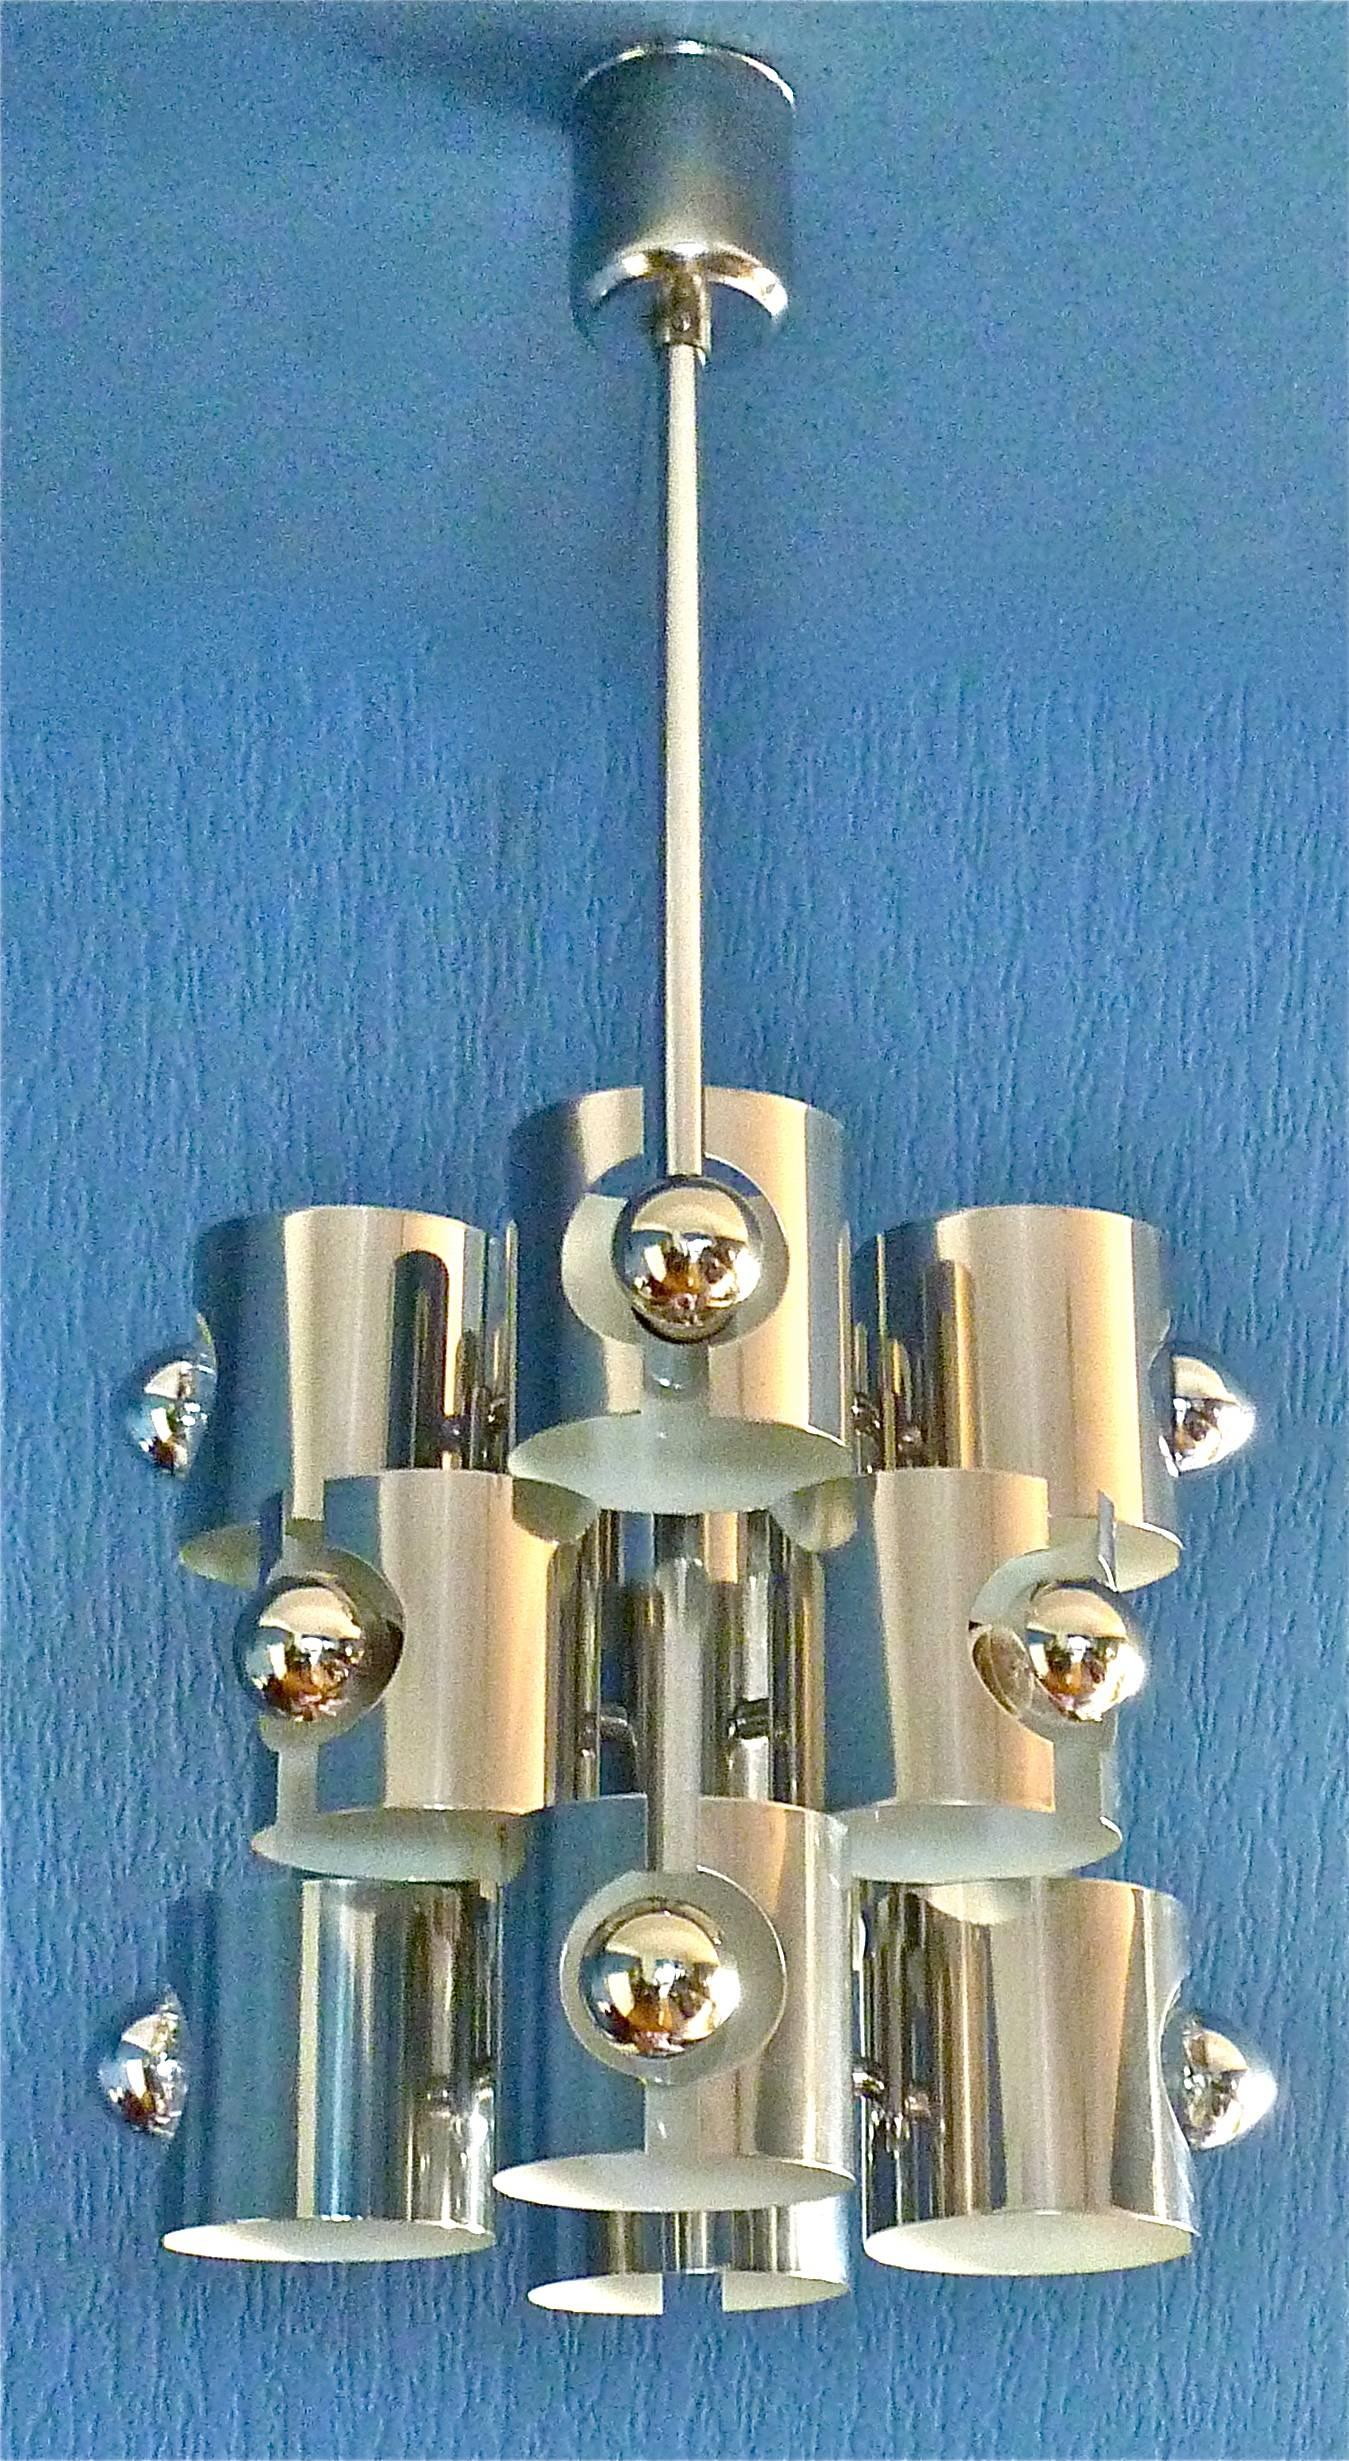 Beeindruckender Space Age Op Art Pop Art Kronleuchter, entworfen von Gaetano Sciolari und ausgeführt von Sciolari, Italien, um 1960-70. Die Deckenhalterung und das Gestell sind aus verchromtem Messing und weiß lackiertem, emailliertem Metall